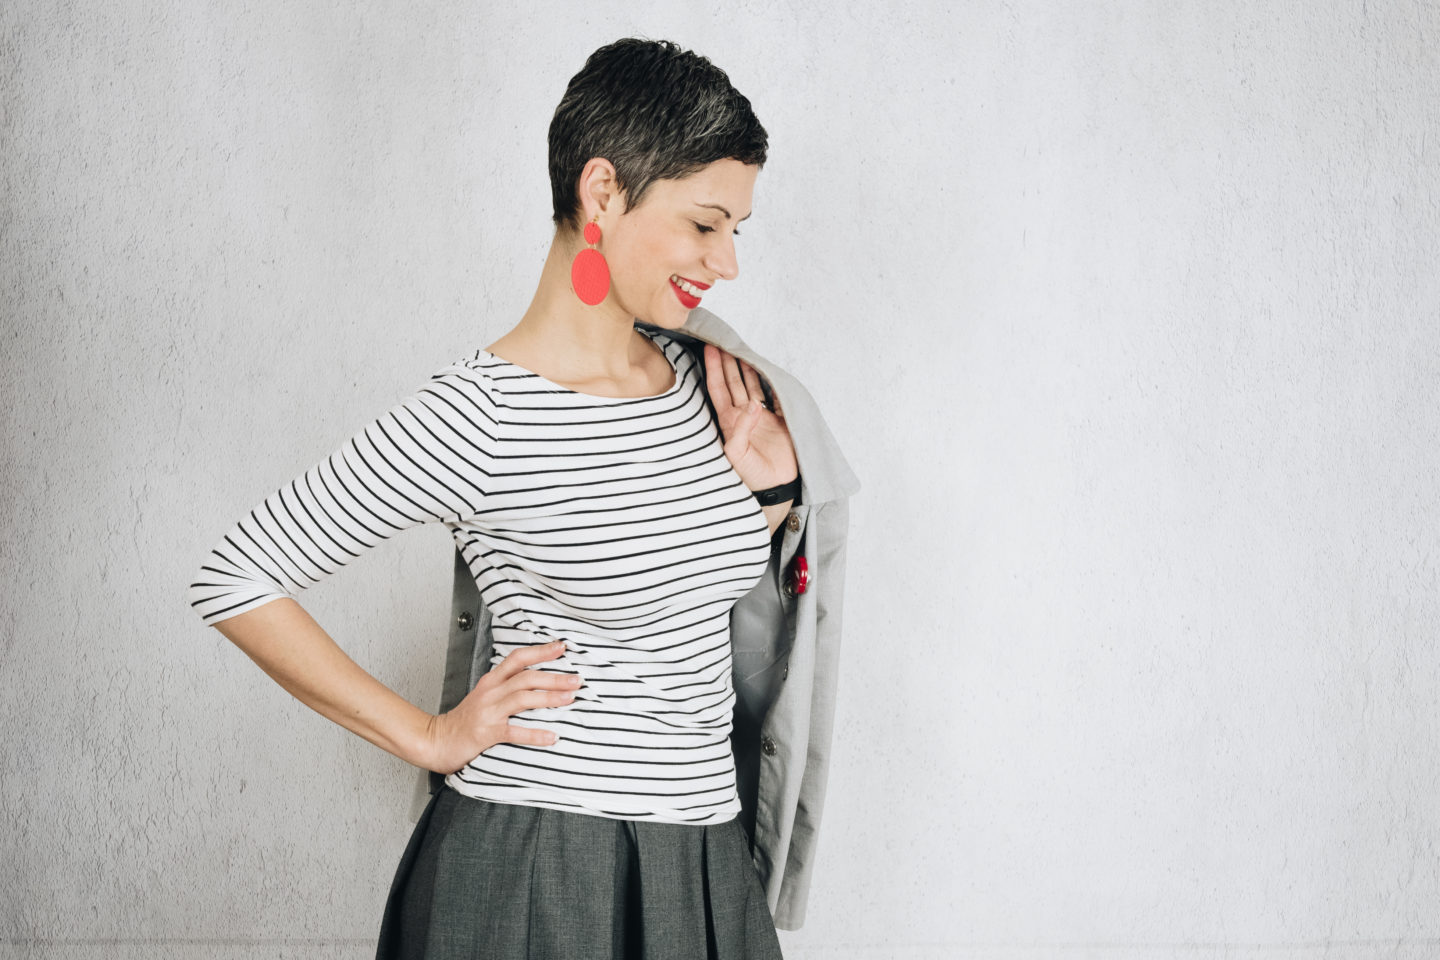 How to style an asymmetric pleated grey skirt (Burda Style 03/2015 #104)